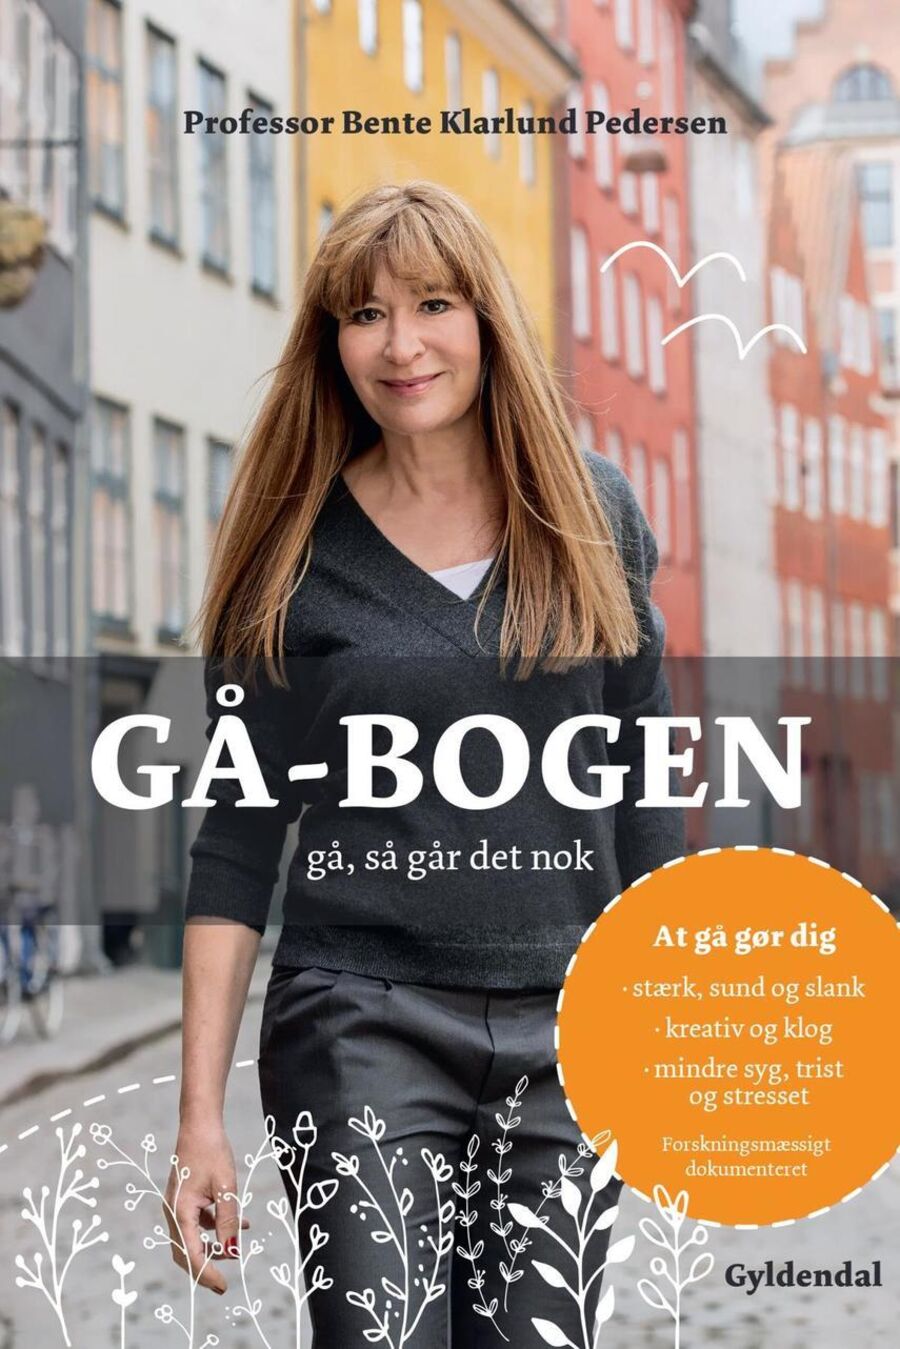 Forsidebillede af bogen: "Gå-bogen : gå, så går det nok"